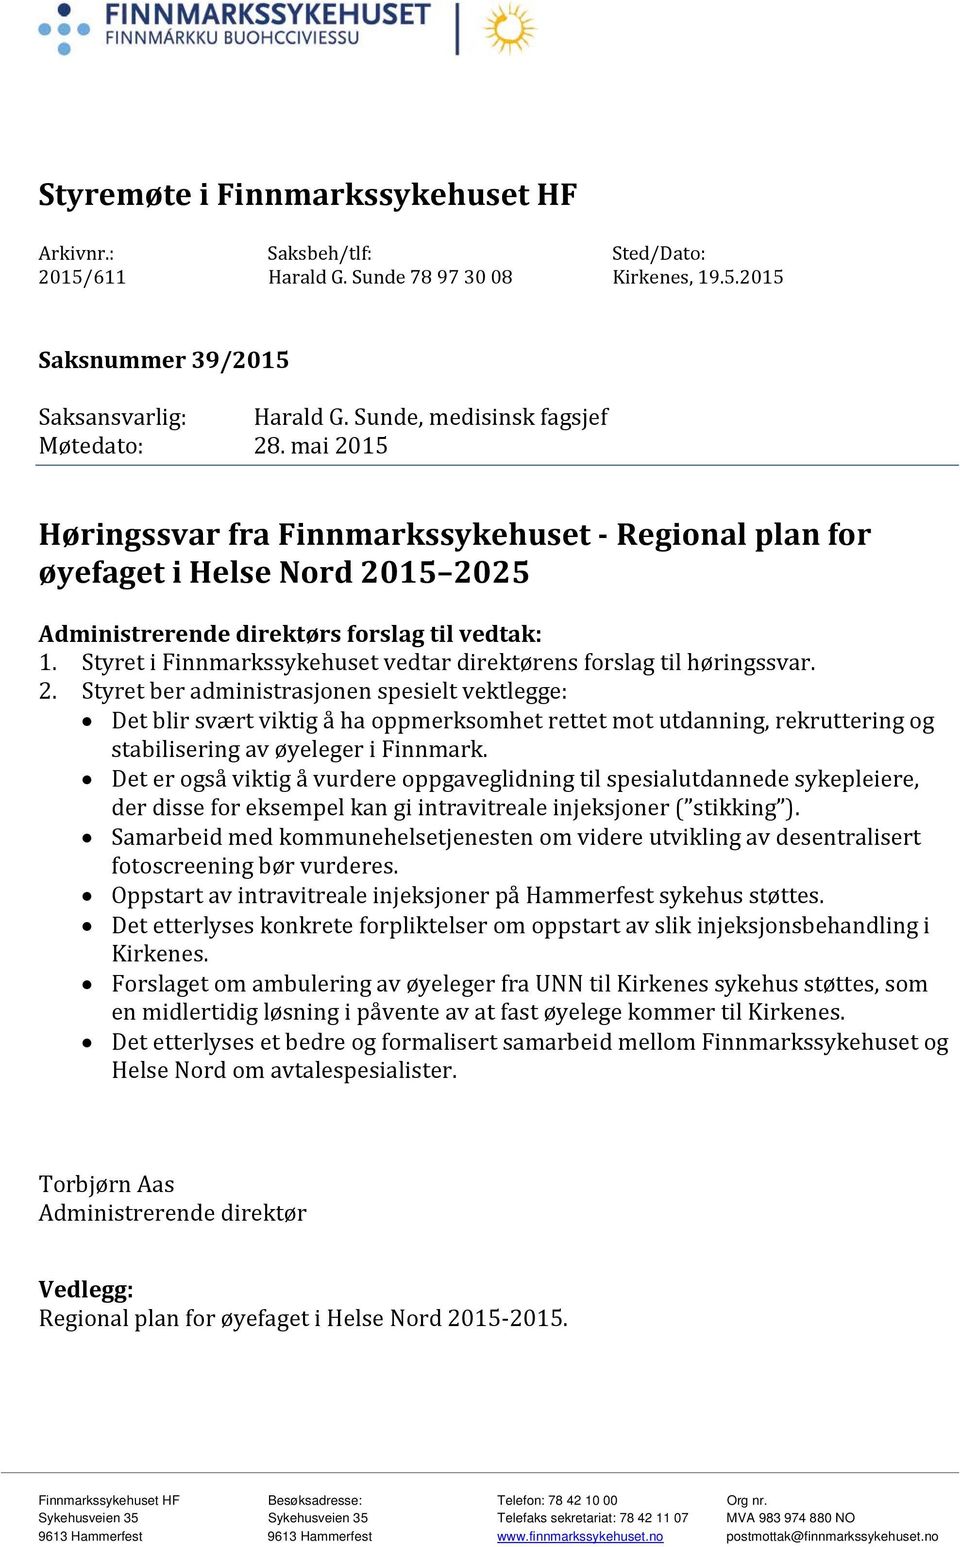 Styret i Finnmarkssykehuset vedtar direktørens forslag til høringssvar. 2.